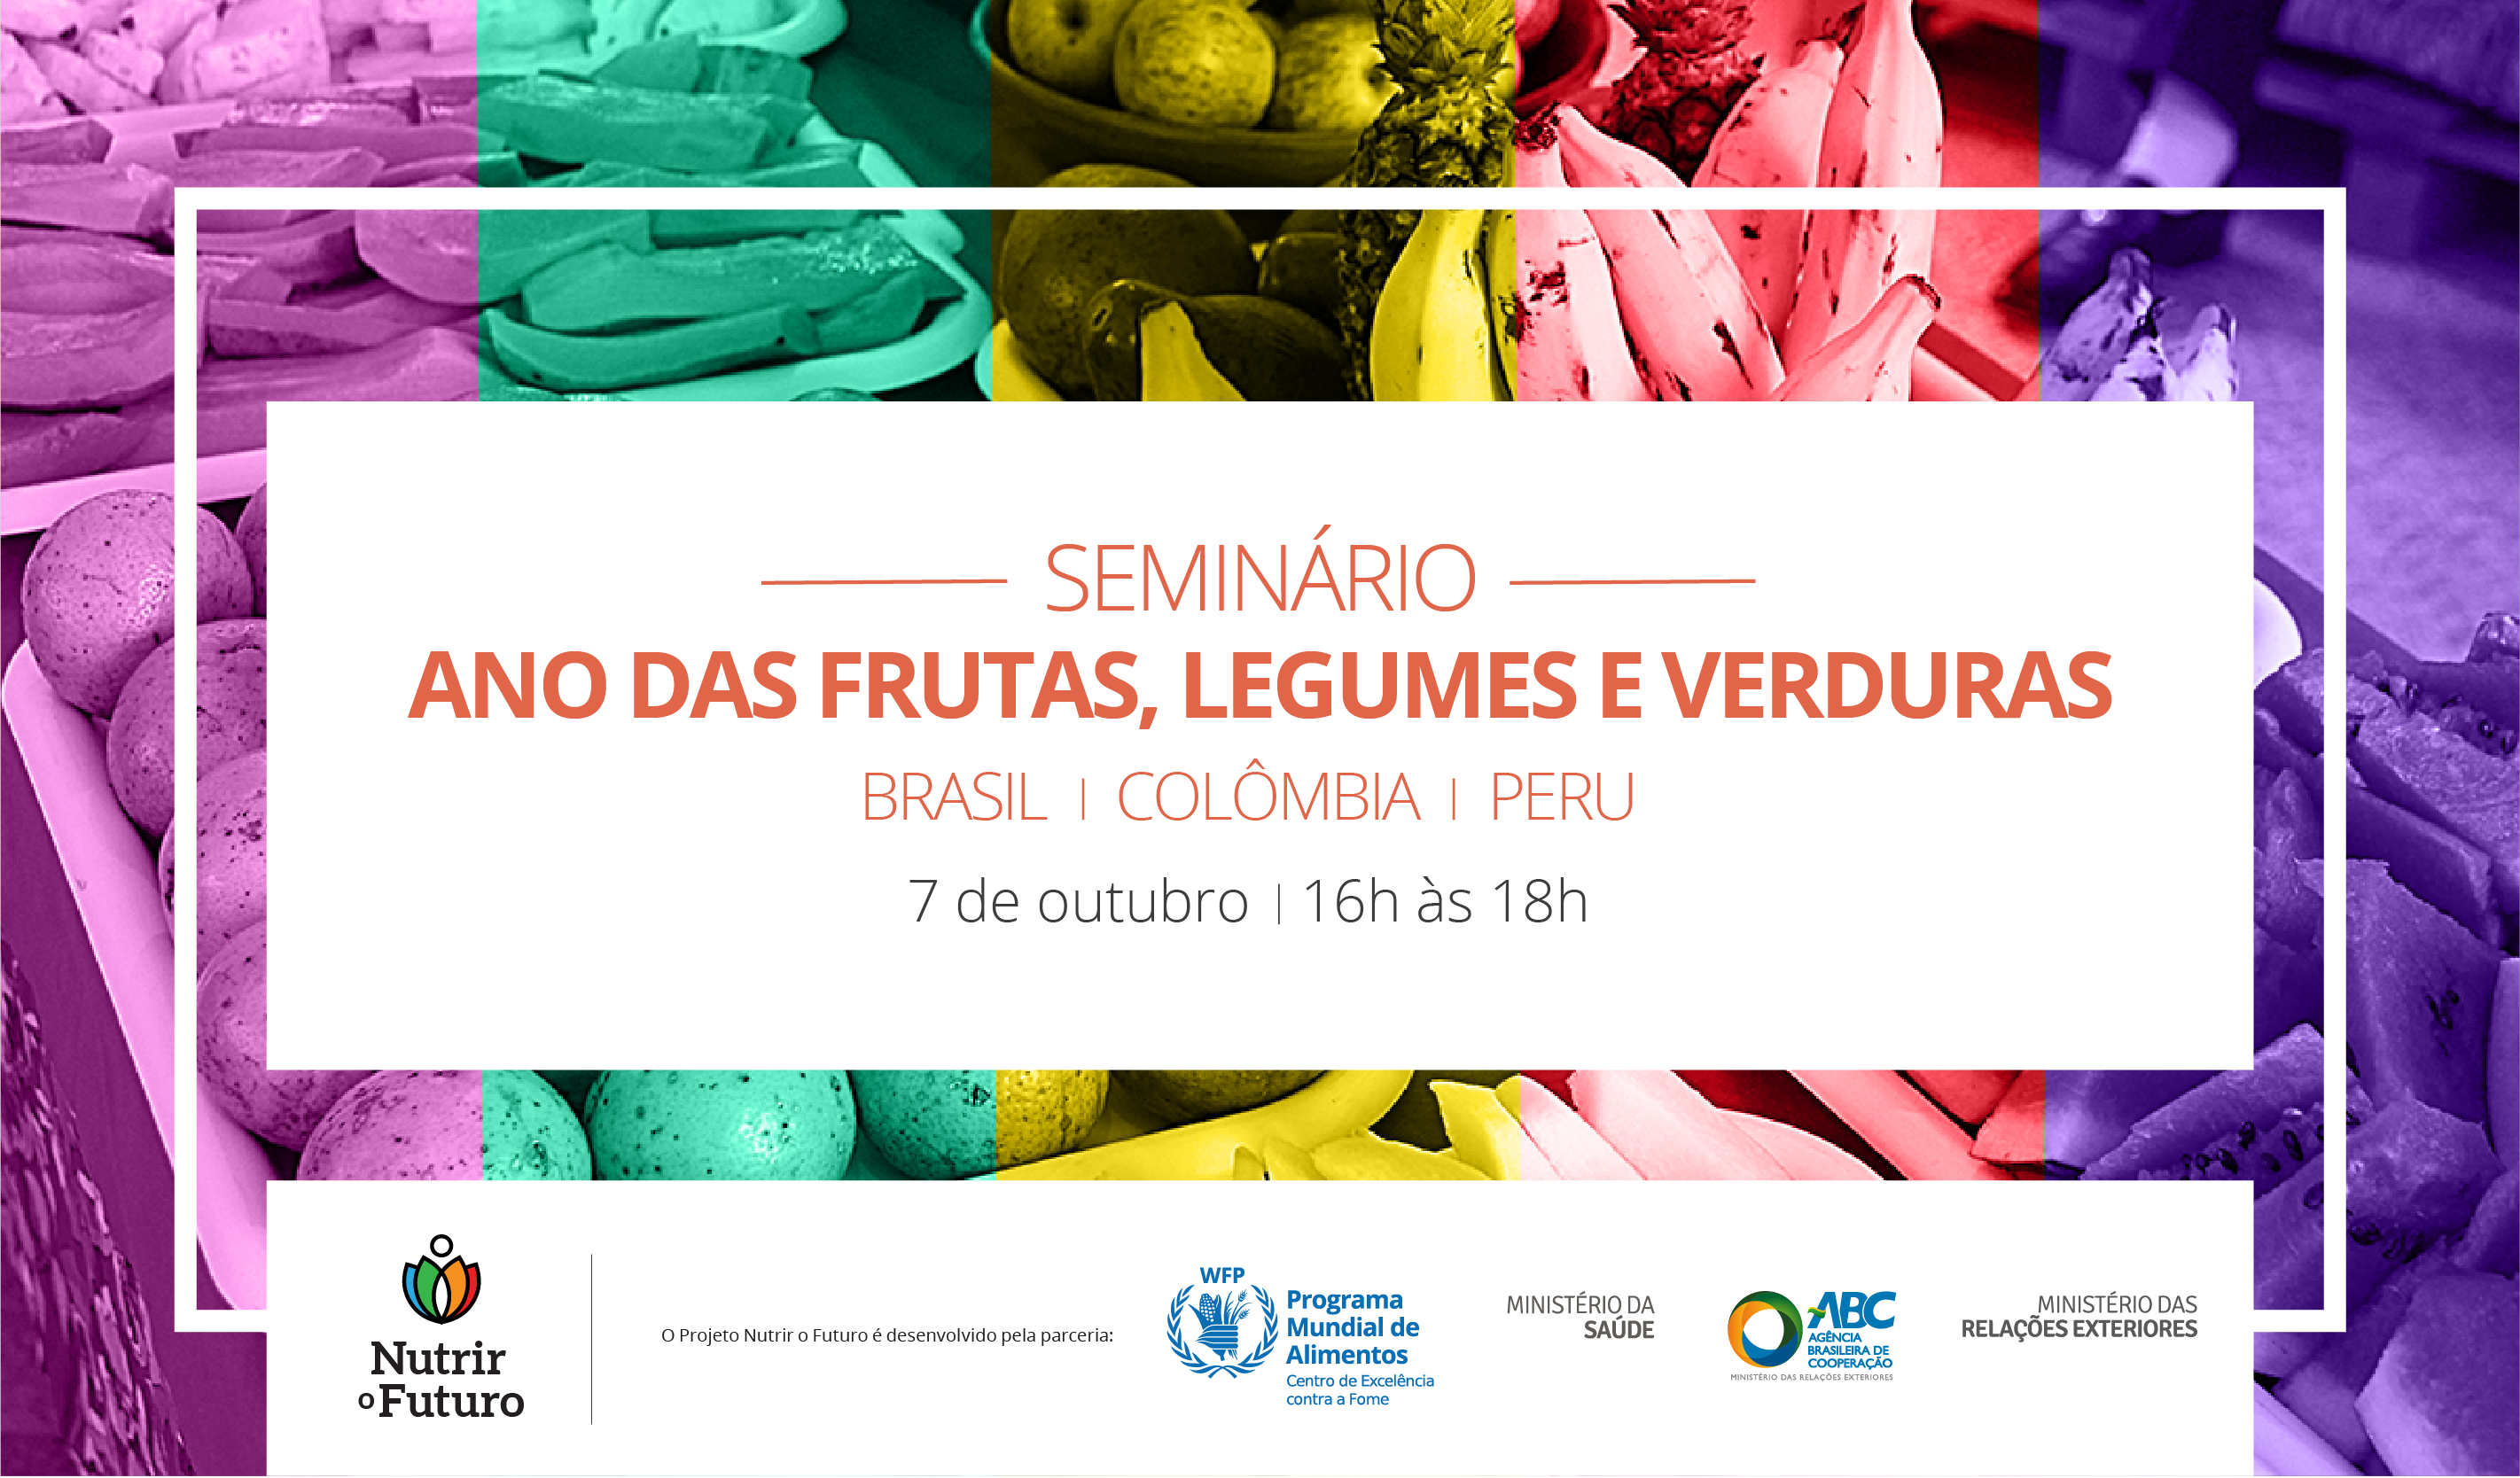 Brasil, Colômbia e Peru participam de seminário sobre Ano das Frutas, Legumes e Verduras